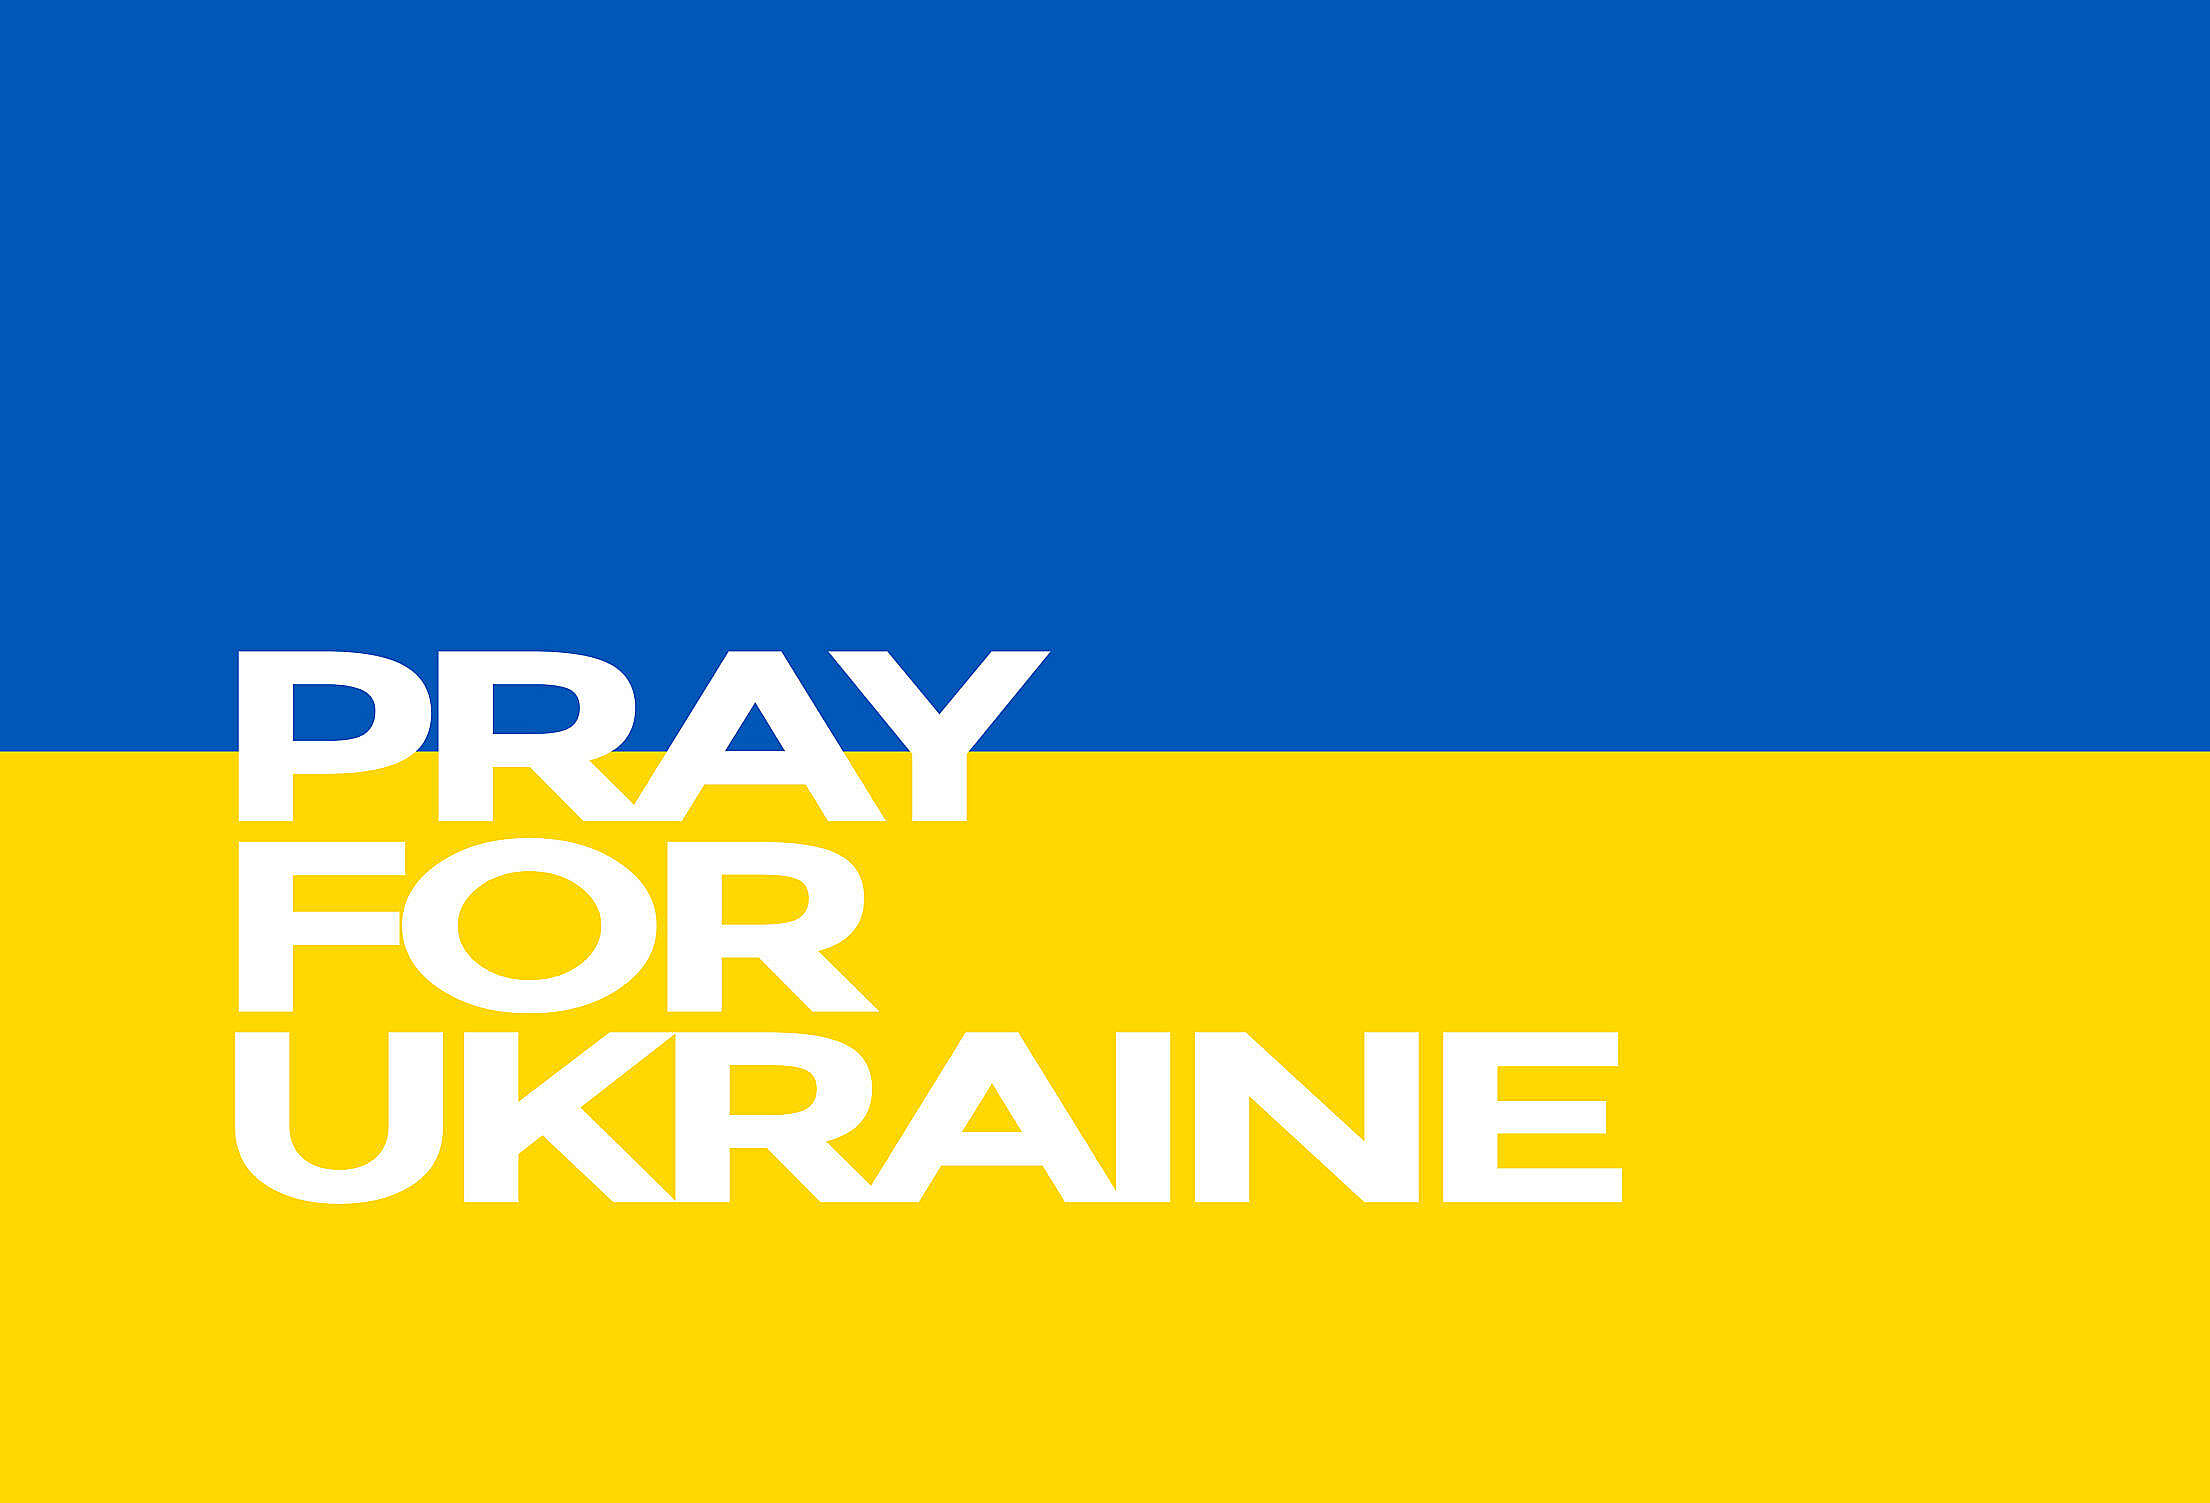 Pray for Ukraine Hi-Res Free Stock Photo